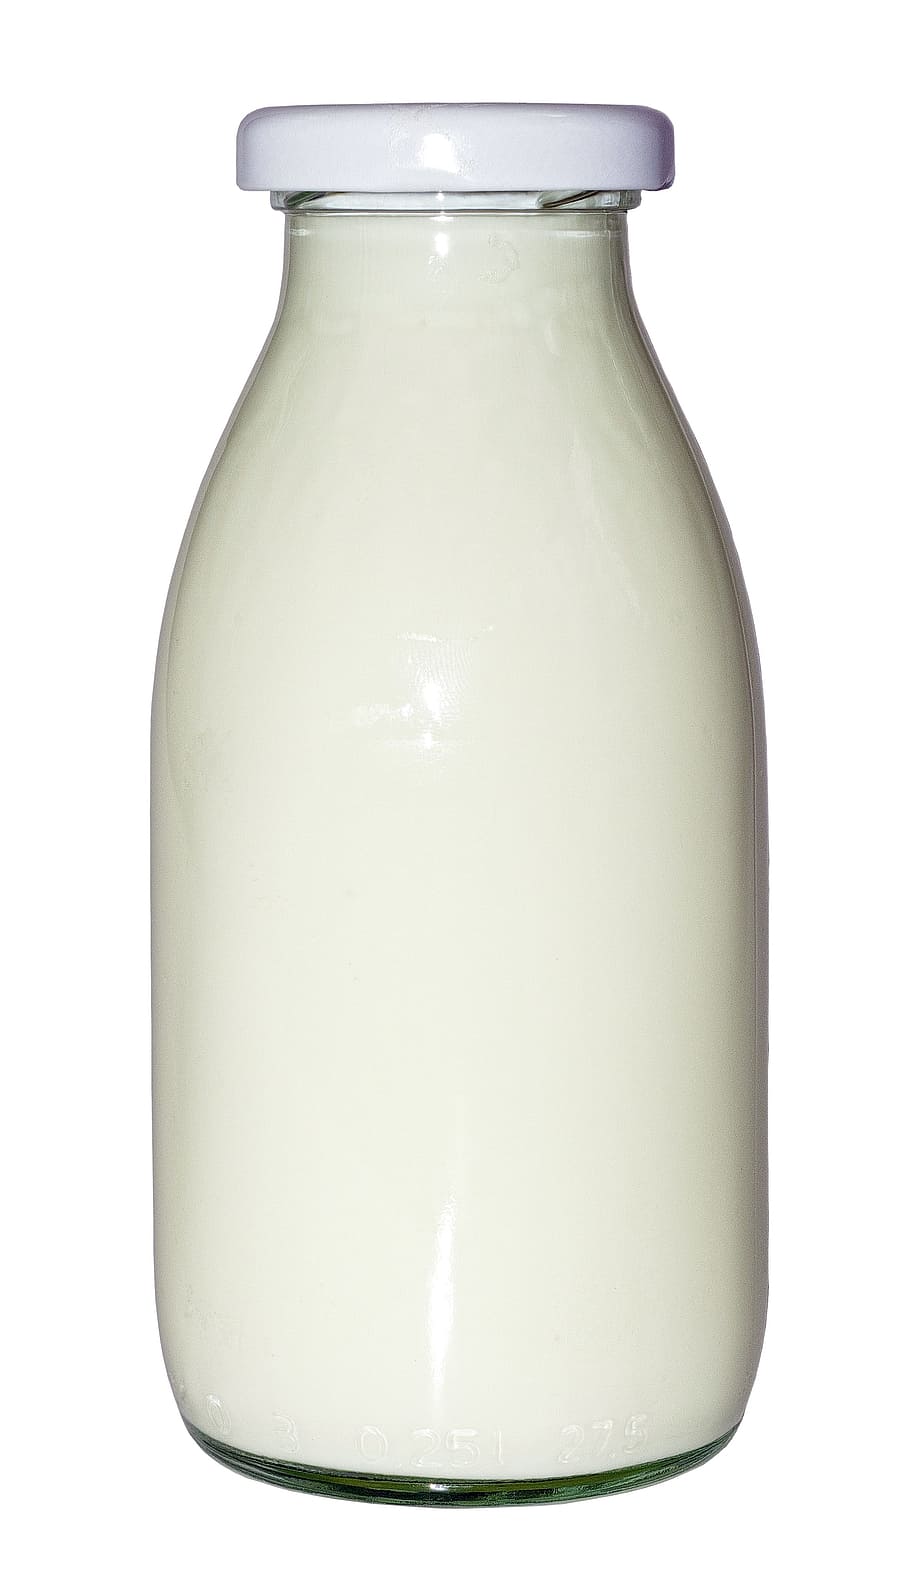 Бутылка молока на прозрачном фоне